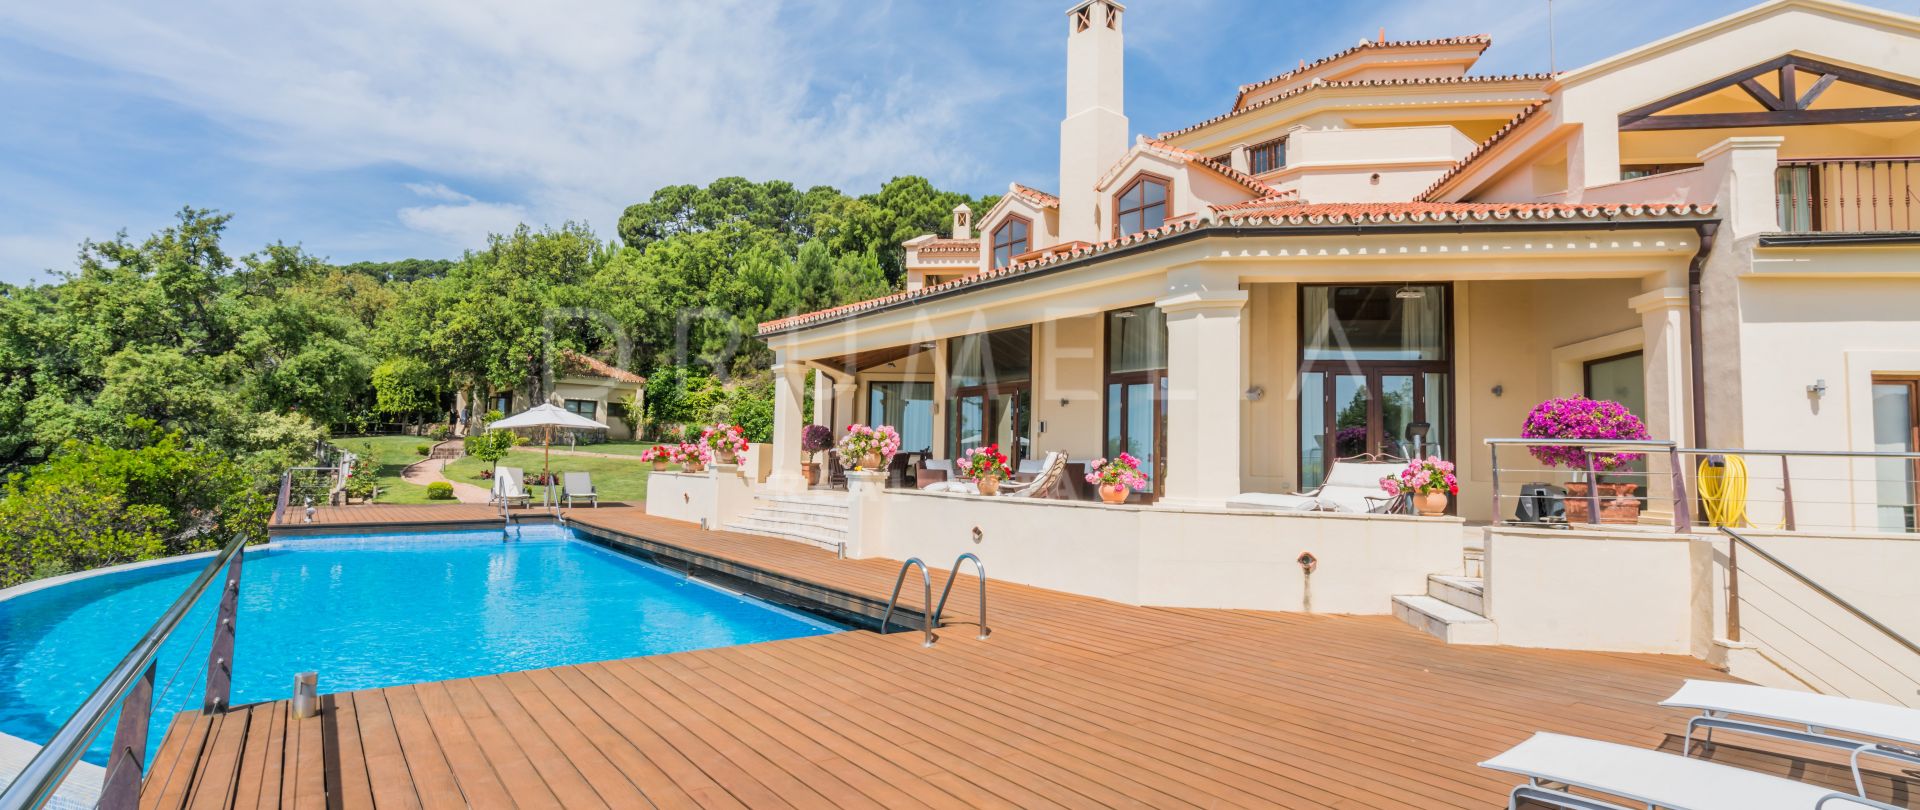 Charmante villa méditerranéenne de luxe à Zagaleta